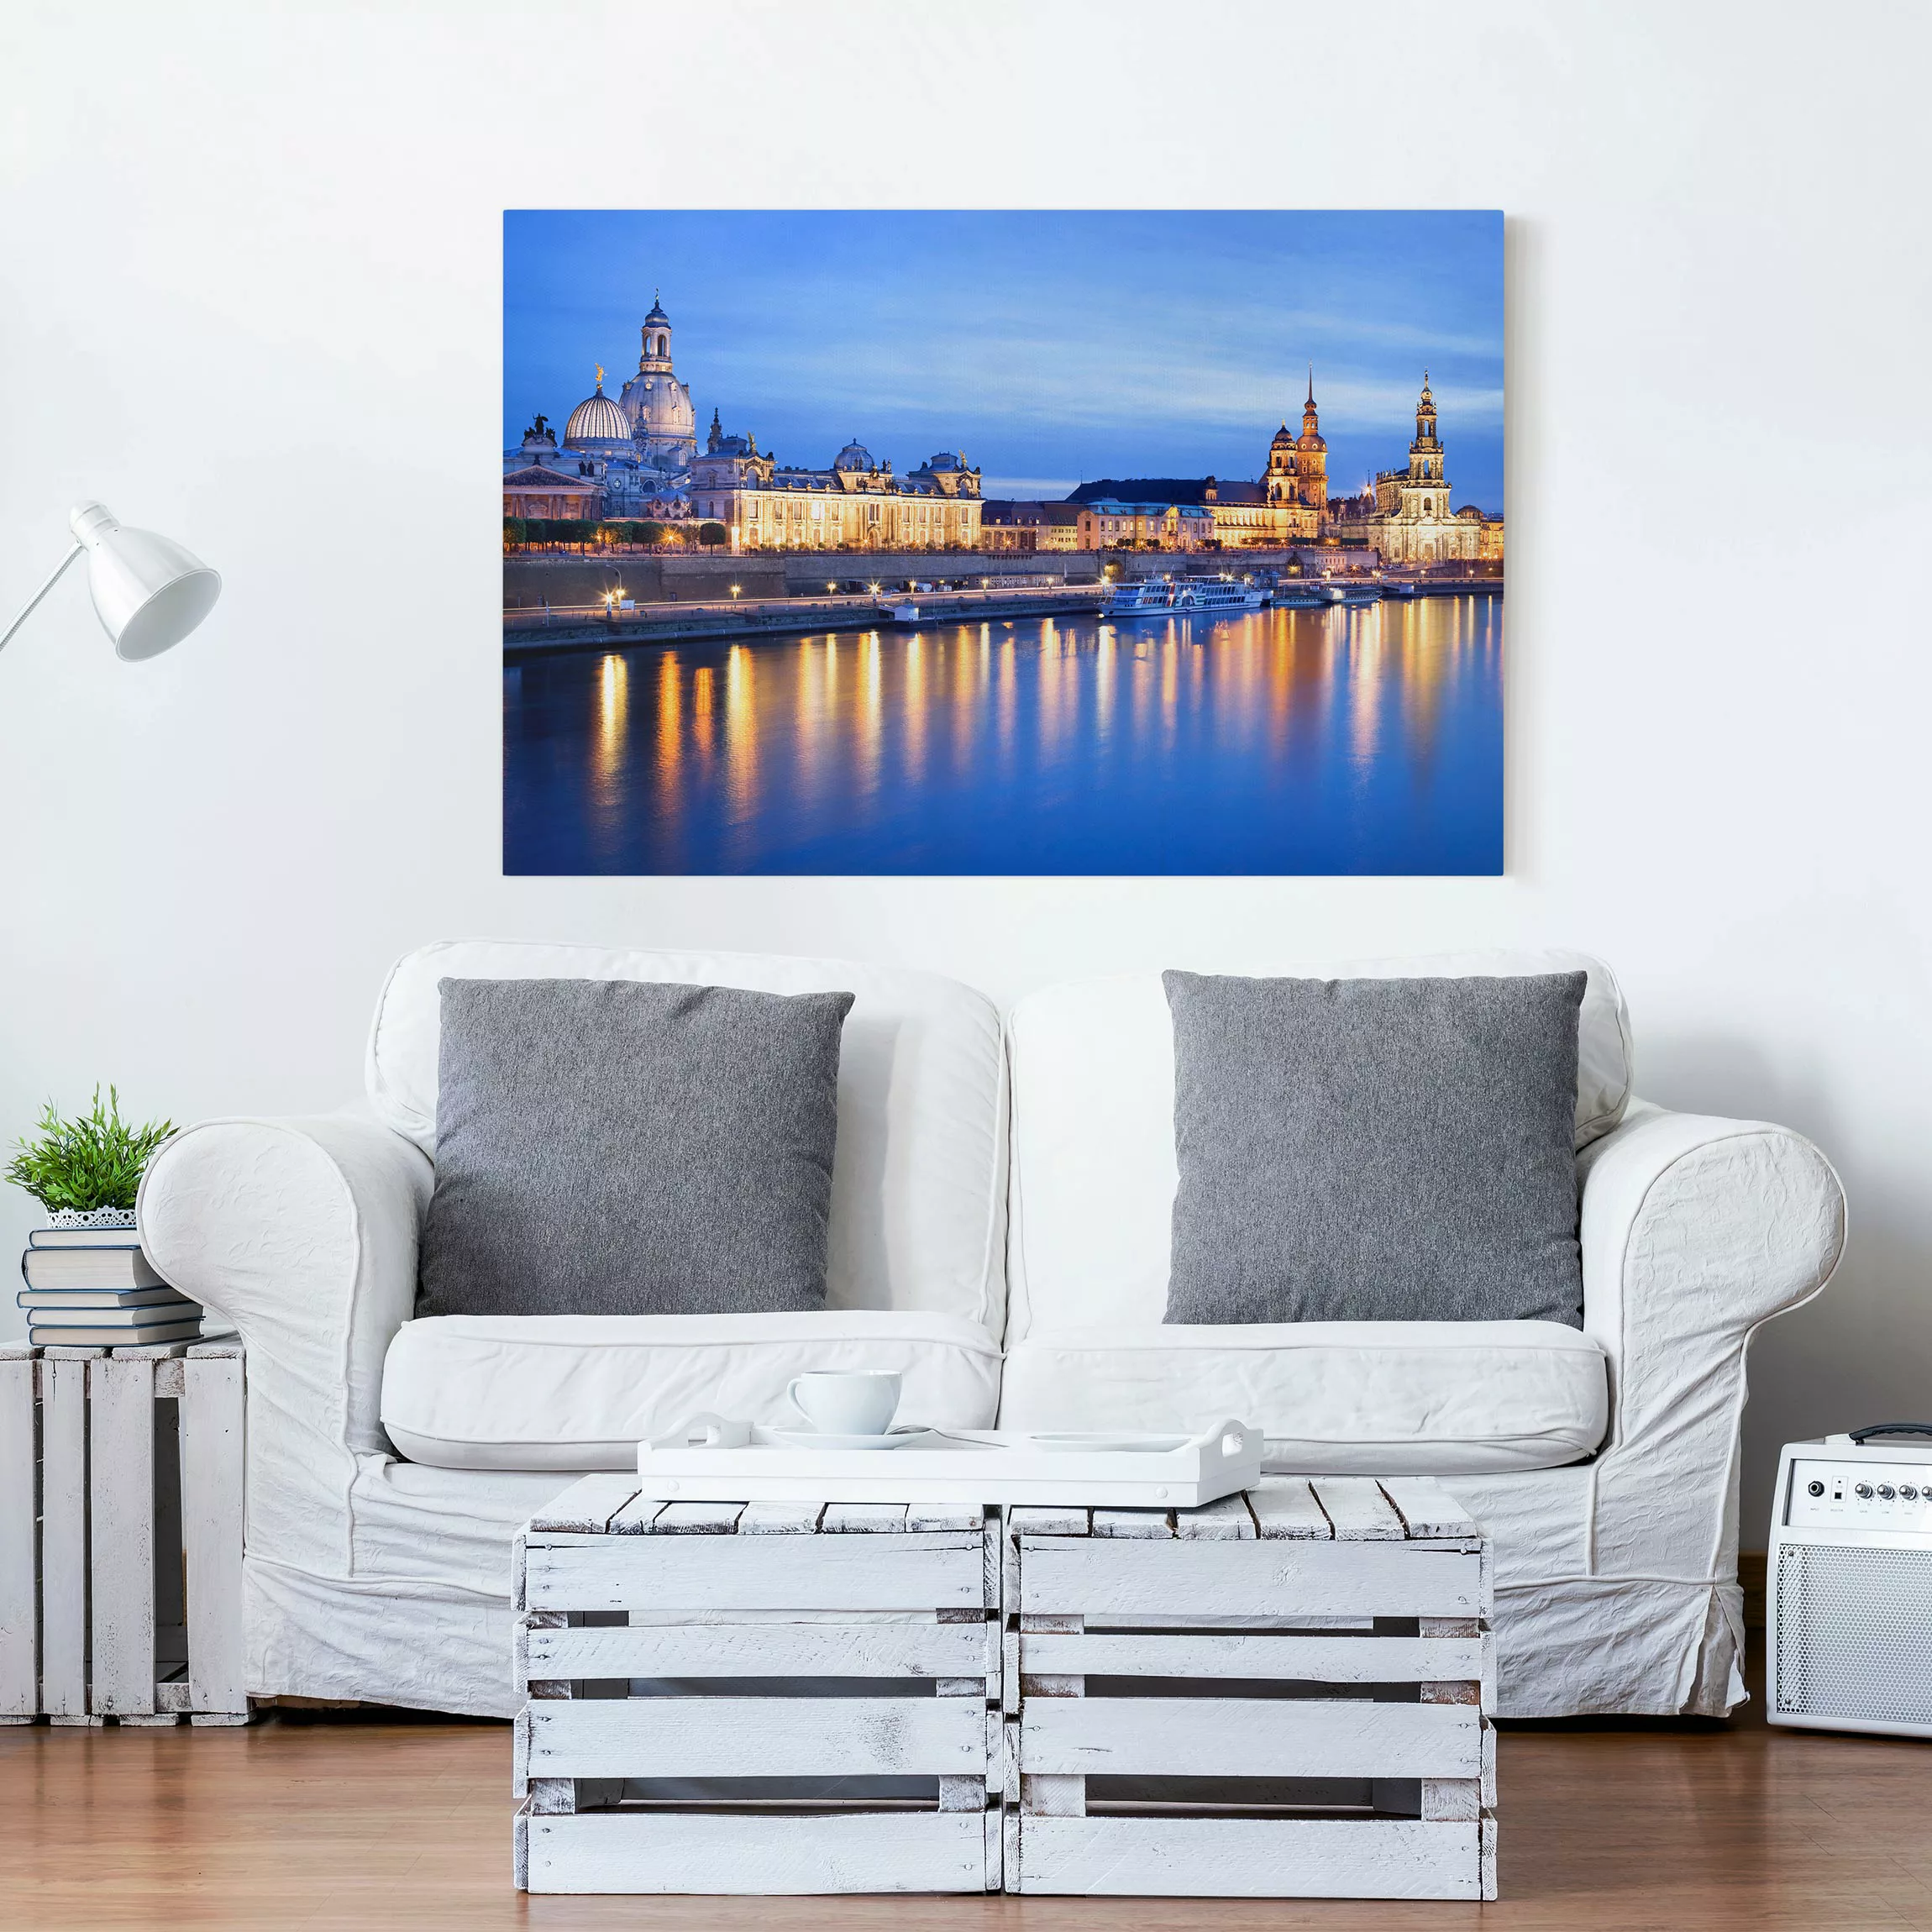 Leinwandbild Architektur & Skyline - Querformat Canaletto-Blick bei Nacht günstig online kaufen